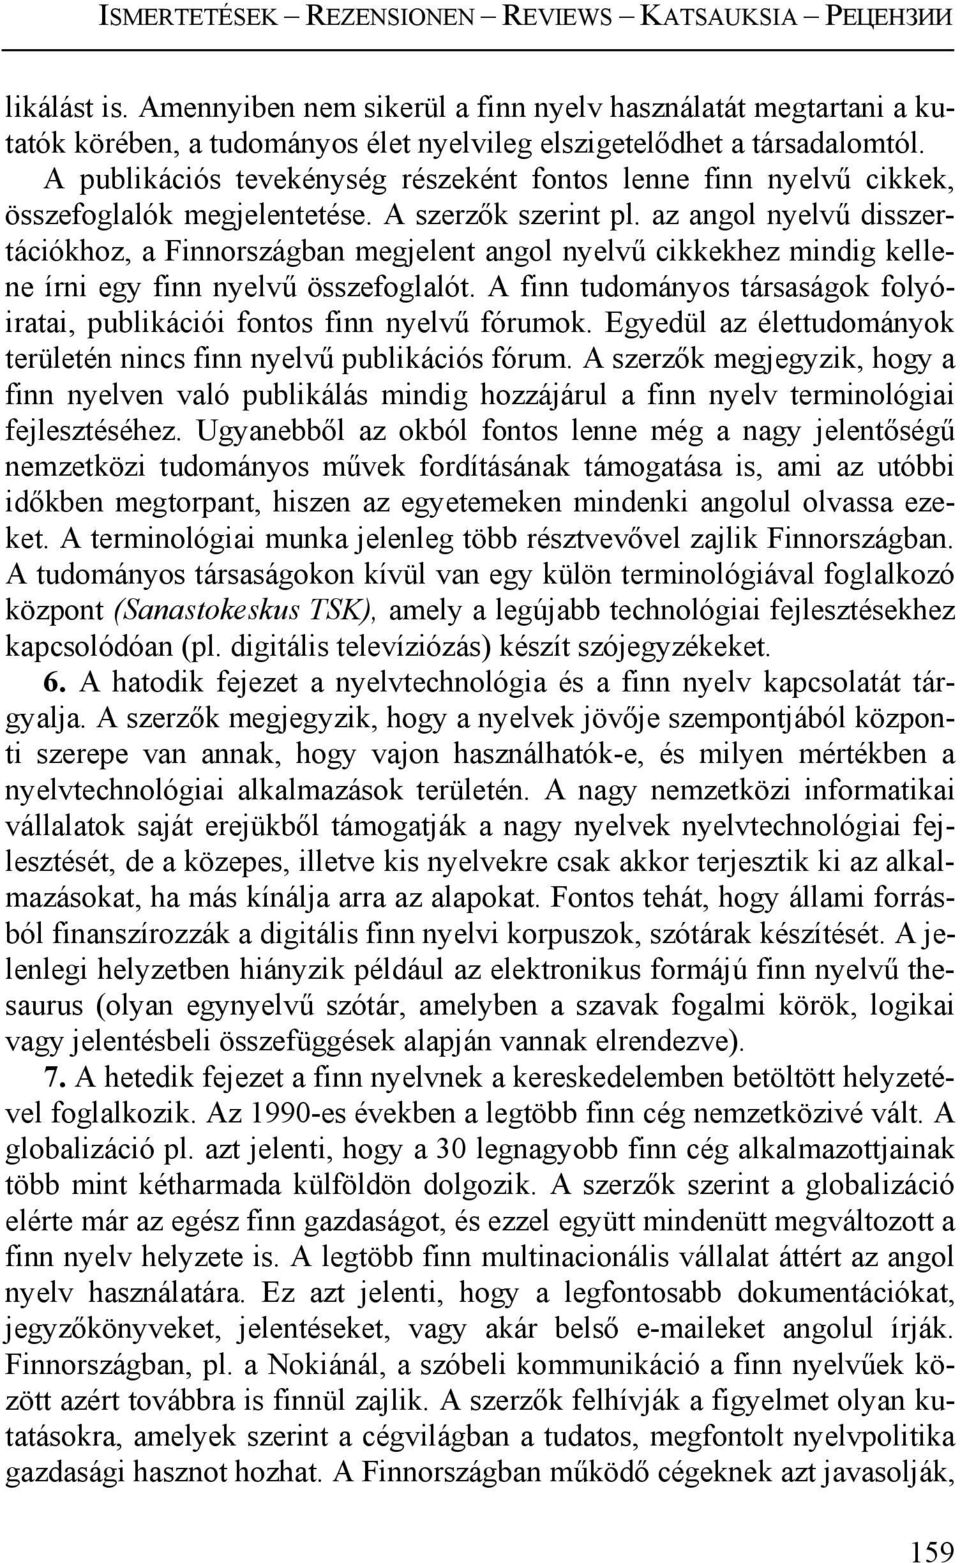 az angol nyelvű disszertációkhoz, a Finnországban megjelent angol nyelvű cikkekhez mindig kellene írni egy finn nyelvű összefoglalót.